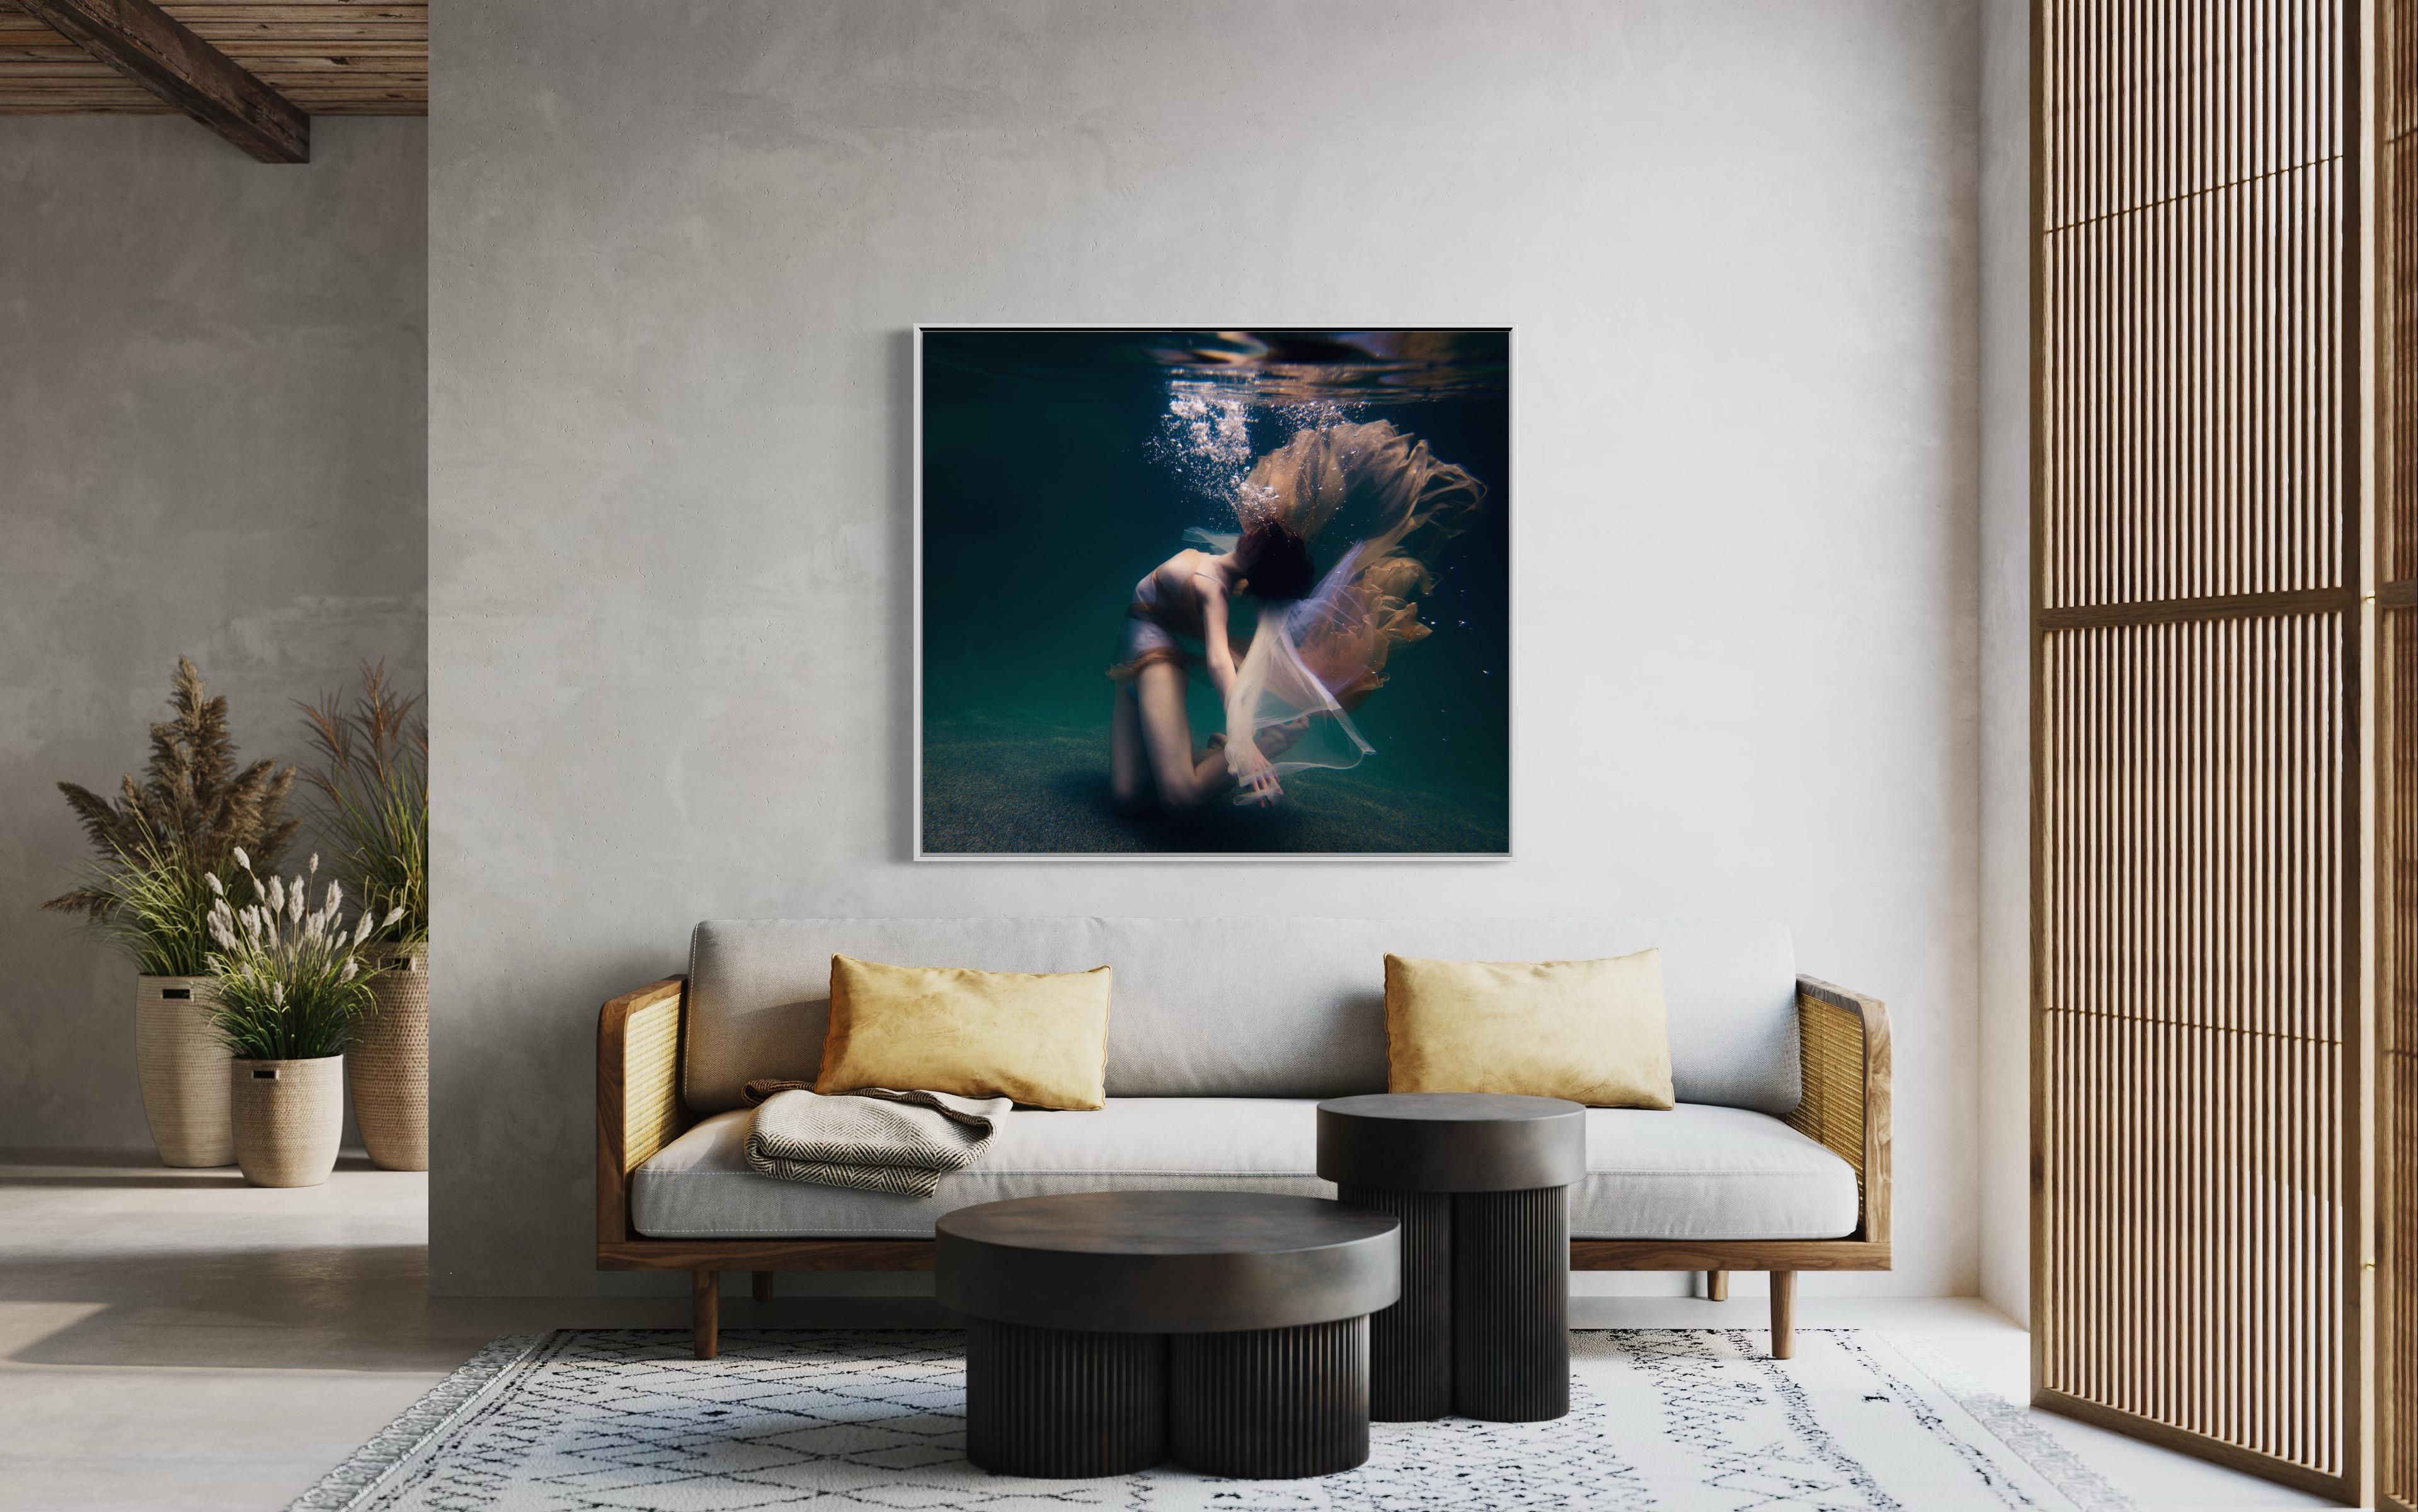 Diese abstrakte figurale Fotografie von Alyssa Fortin in limitierter Auflage fängt die weibliche Form in einer tänzerischen Pose ein, die in Wasser getaucht ist. Luftblasen streben zur Wasseroberfläche, während die Figur darunter ausatmet. Weicher